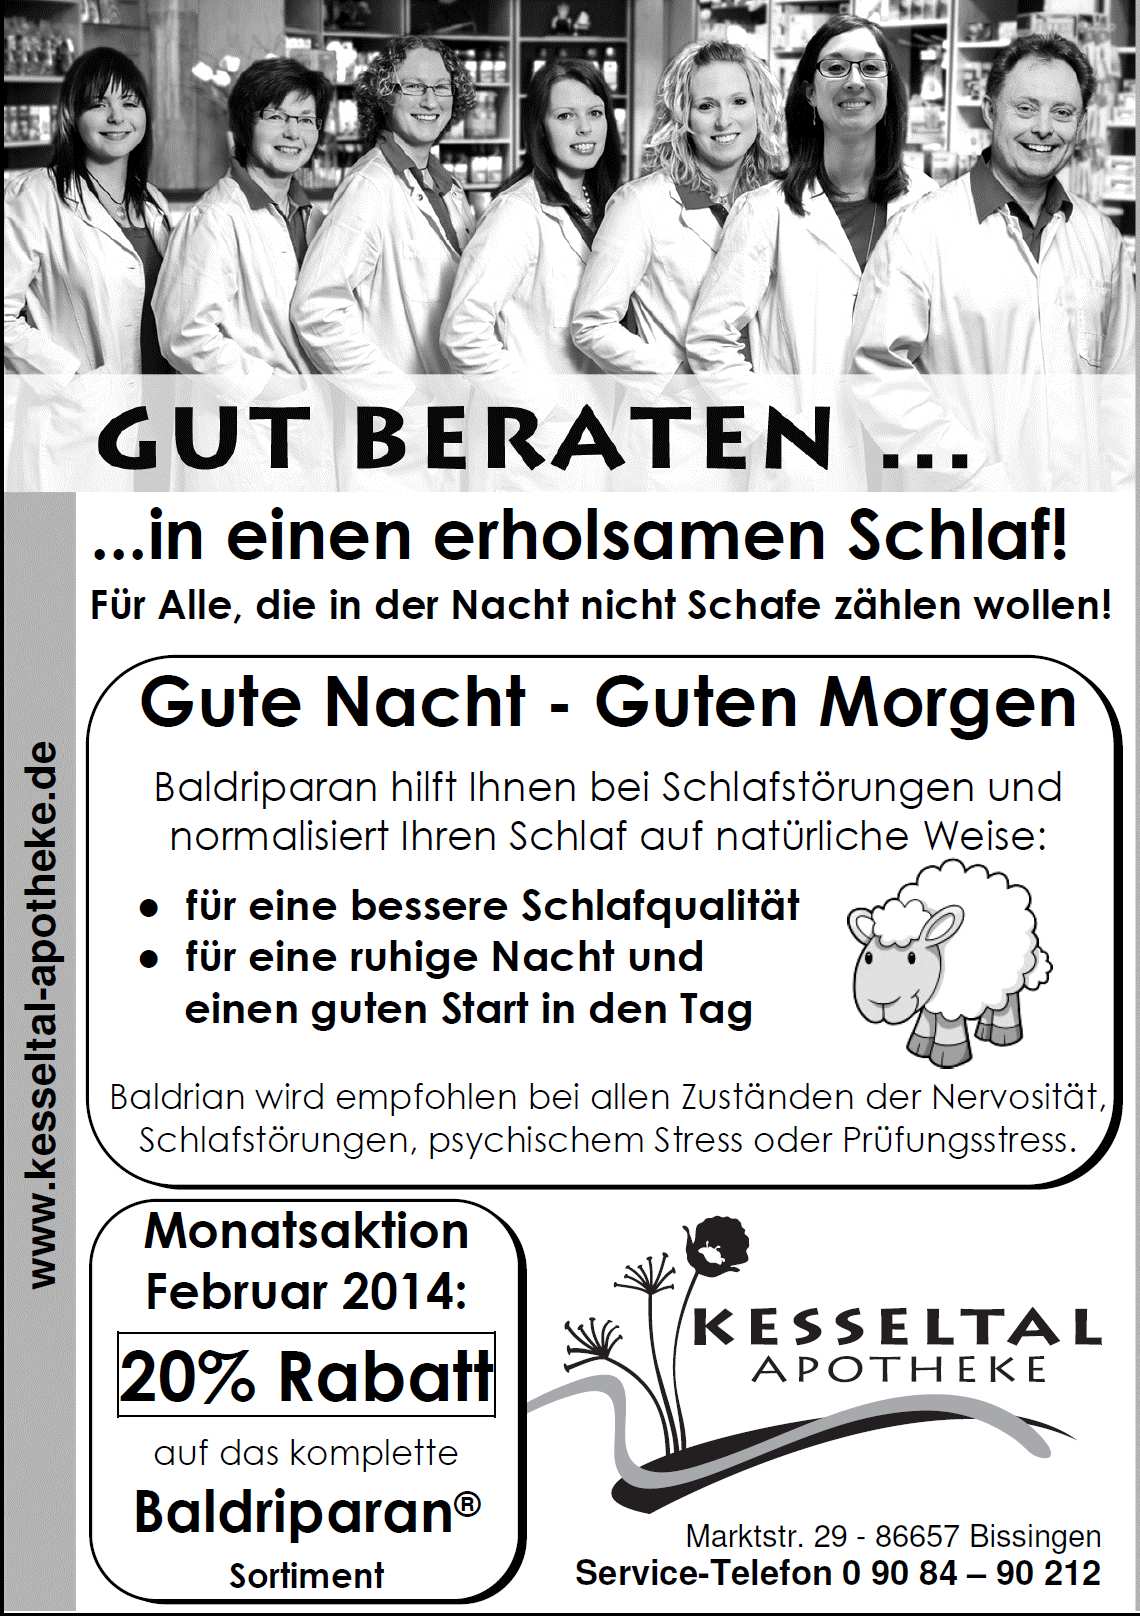 Verkaufslisten können von 01.02. bis 28.02.2013 unter kleiderbasarbissingen@t-online.de oder steffi-wanner@gmx.